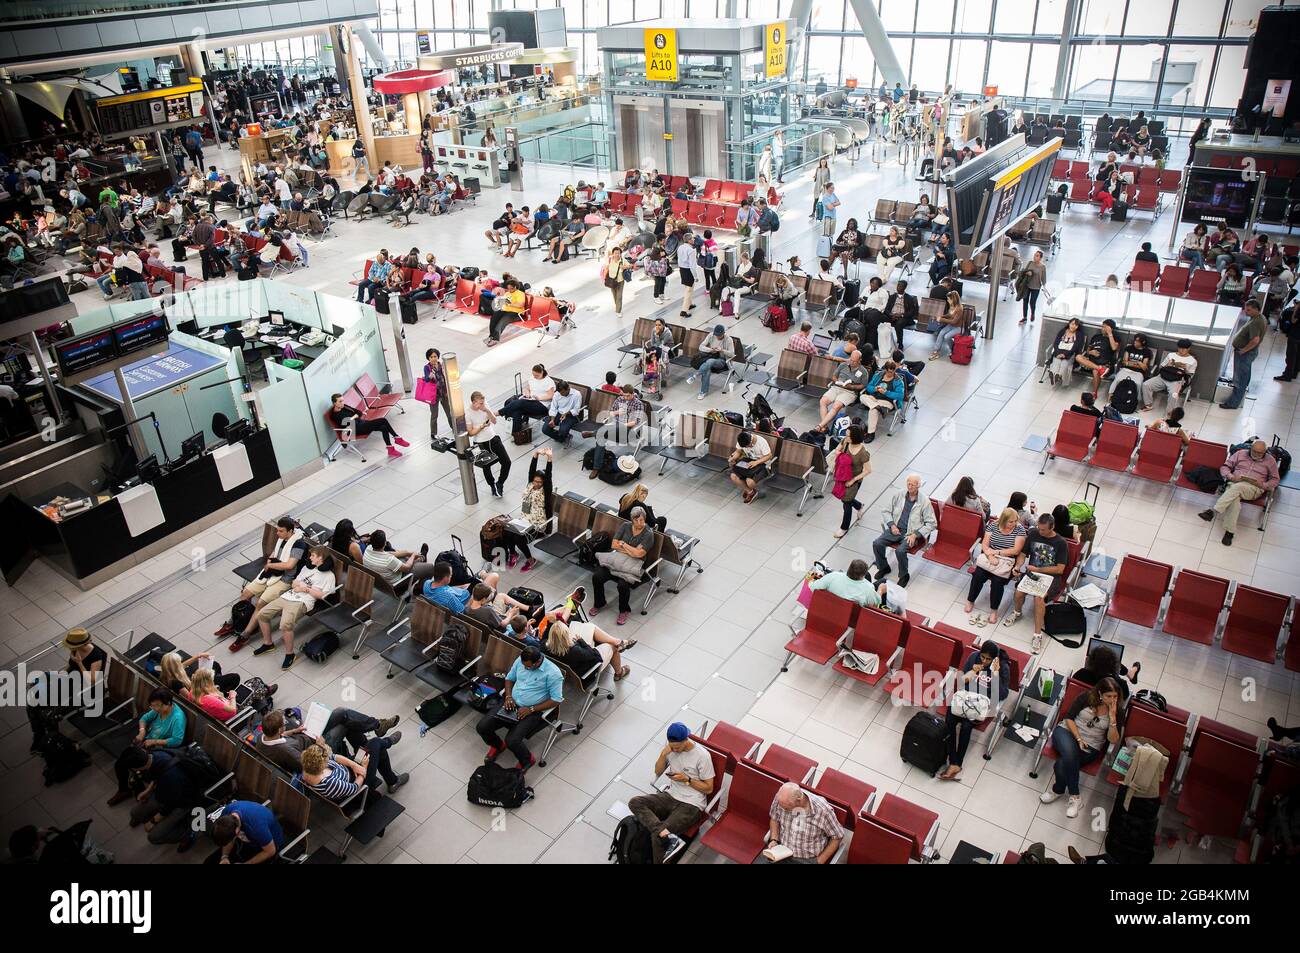 Aéroport international de Los Angeles (LAX), dans la salle d'embarquement nationale. Les voyageurs sont rassemblés dans la région en attendant la procédure d'embarquement - Banque D'Images